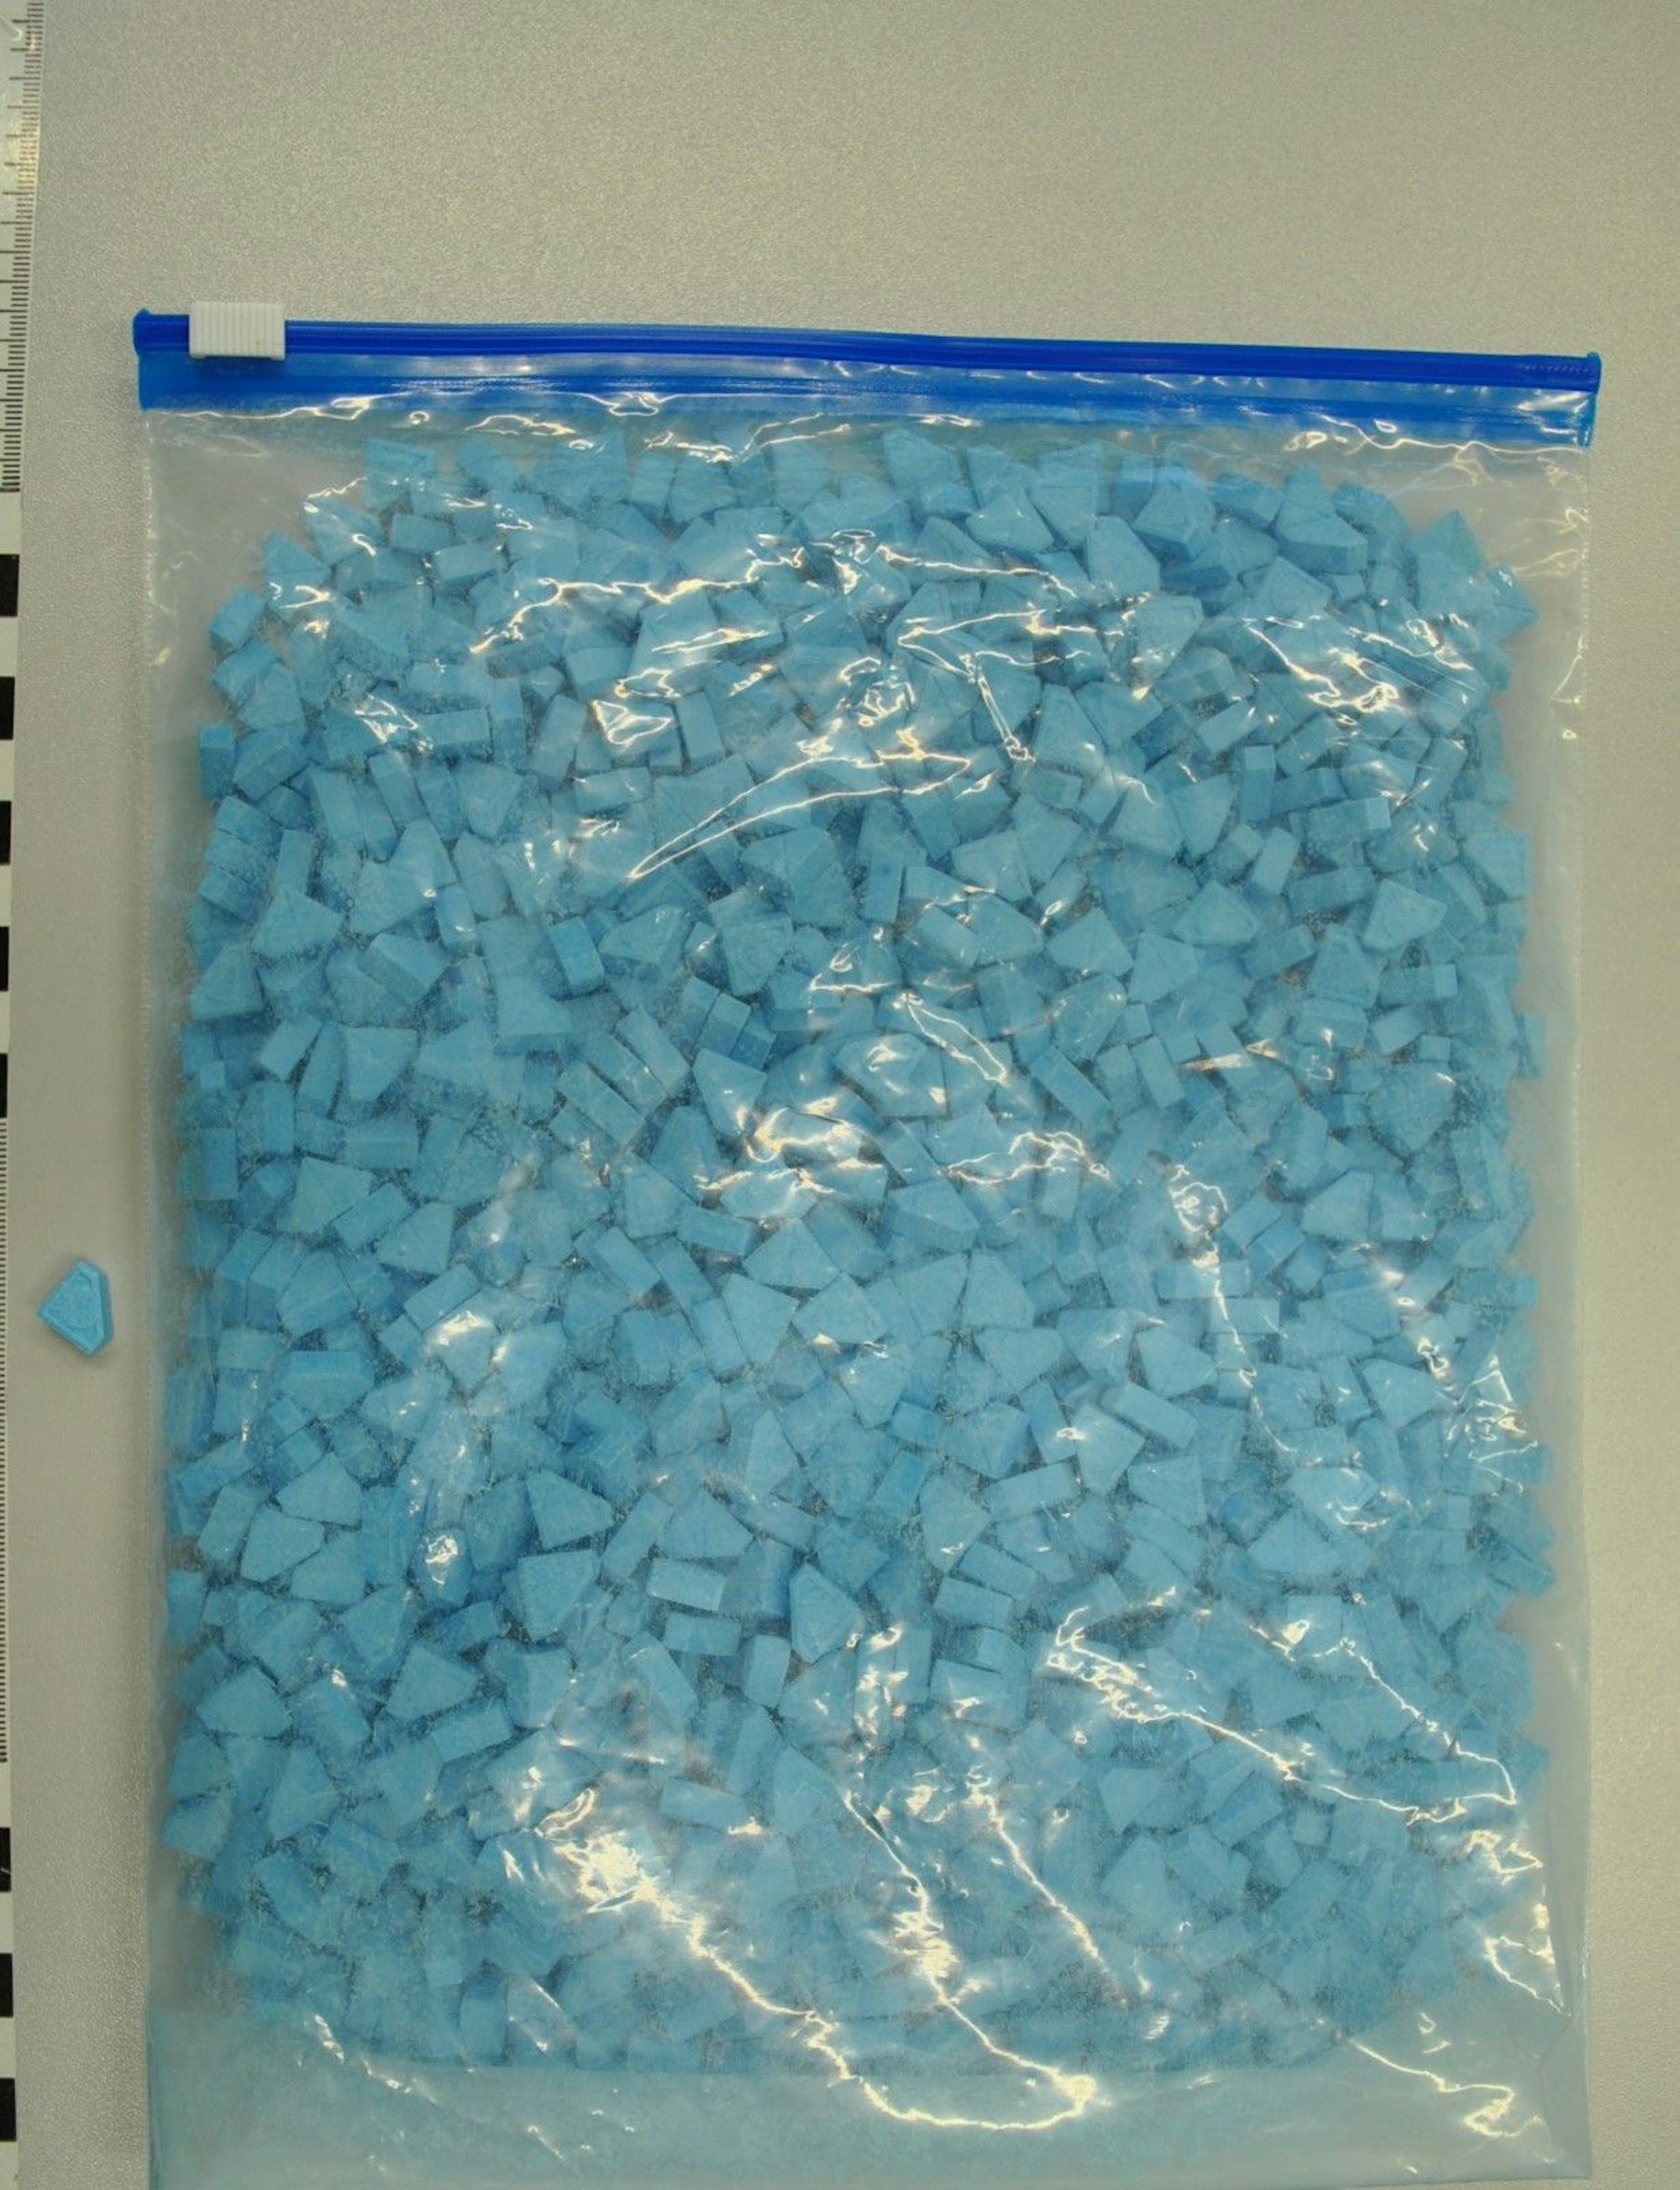 Drogenfund der Polizei Kreis Wesel: Rund 1200 Ecastasy-Tabletten „Blue Punisher“ wurden sichergestellt.